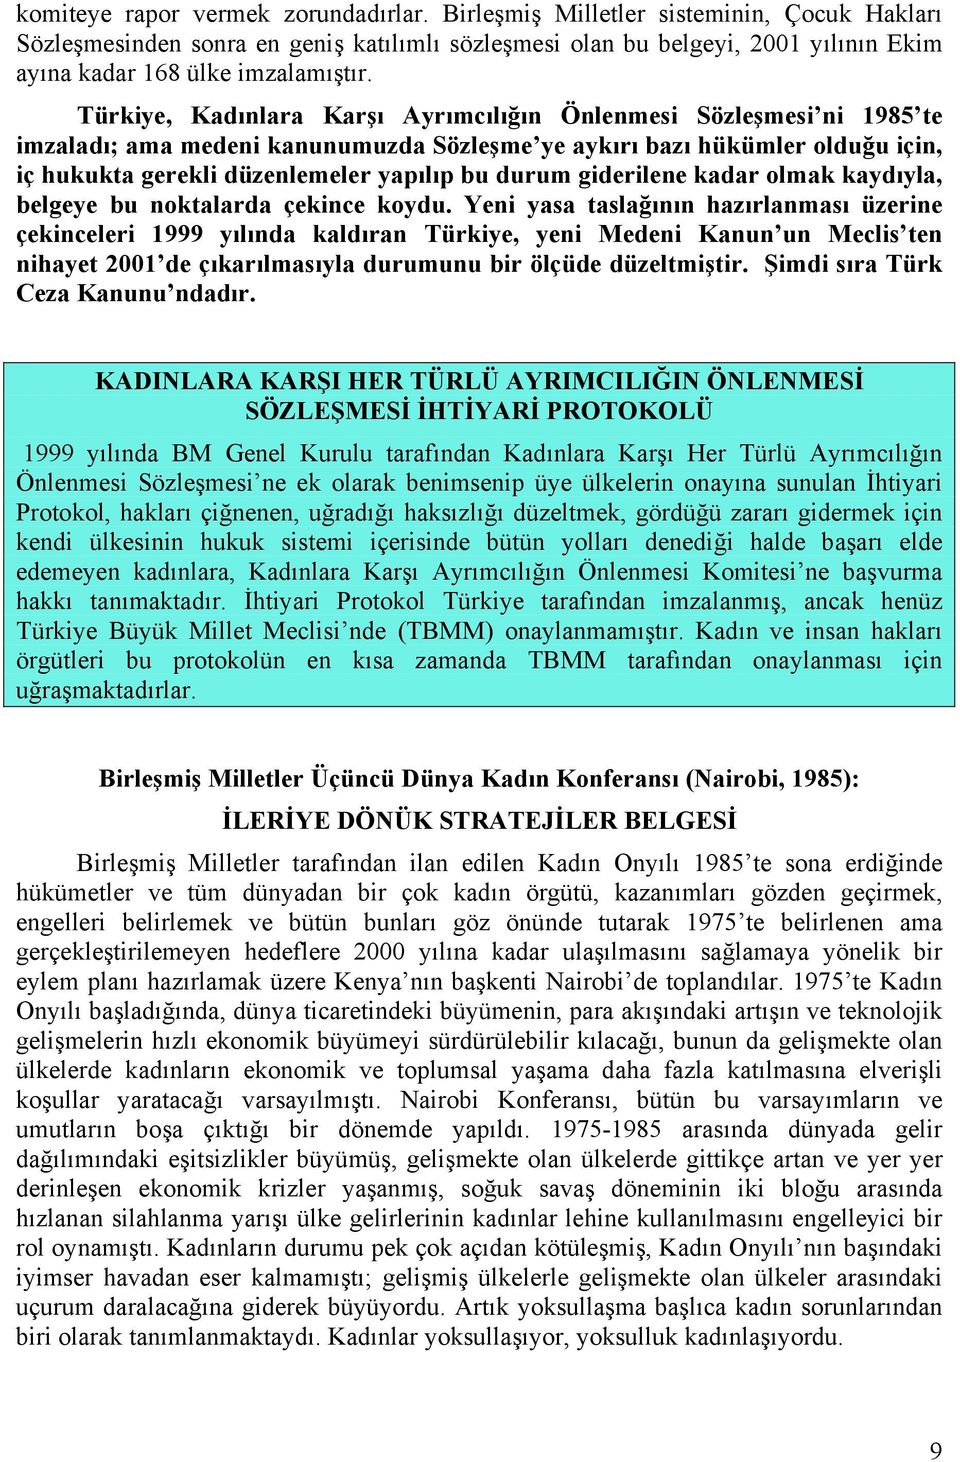 Türkiye, Kadınlara Karşı Ayrımcılığın Önlenmesi Sözleşmesi ni 1985 te imzaladı; ama medeni kanunumuzda Sözleşme ye aykırı bazı hükümler olduğu için, iç hukukta gerekli düzenlemeler yapılıp bu durum